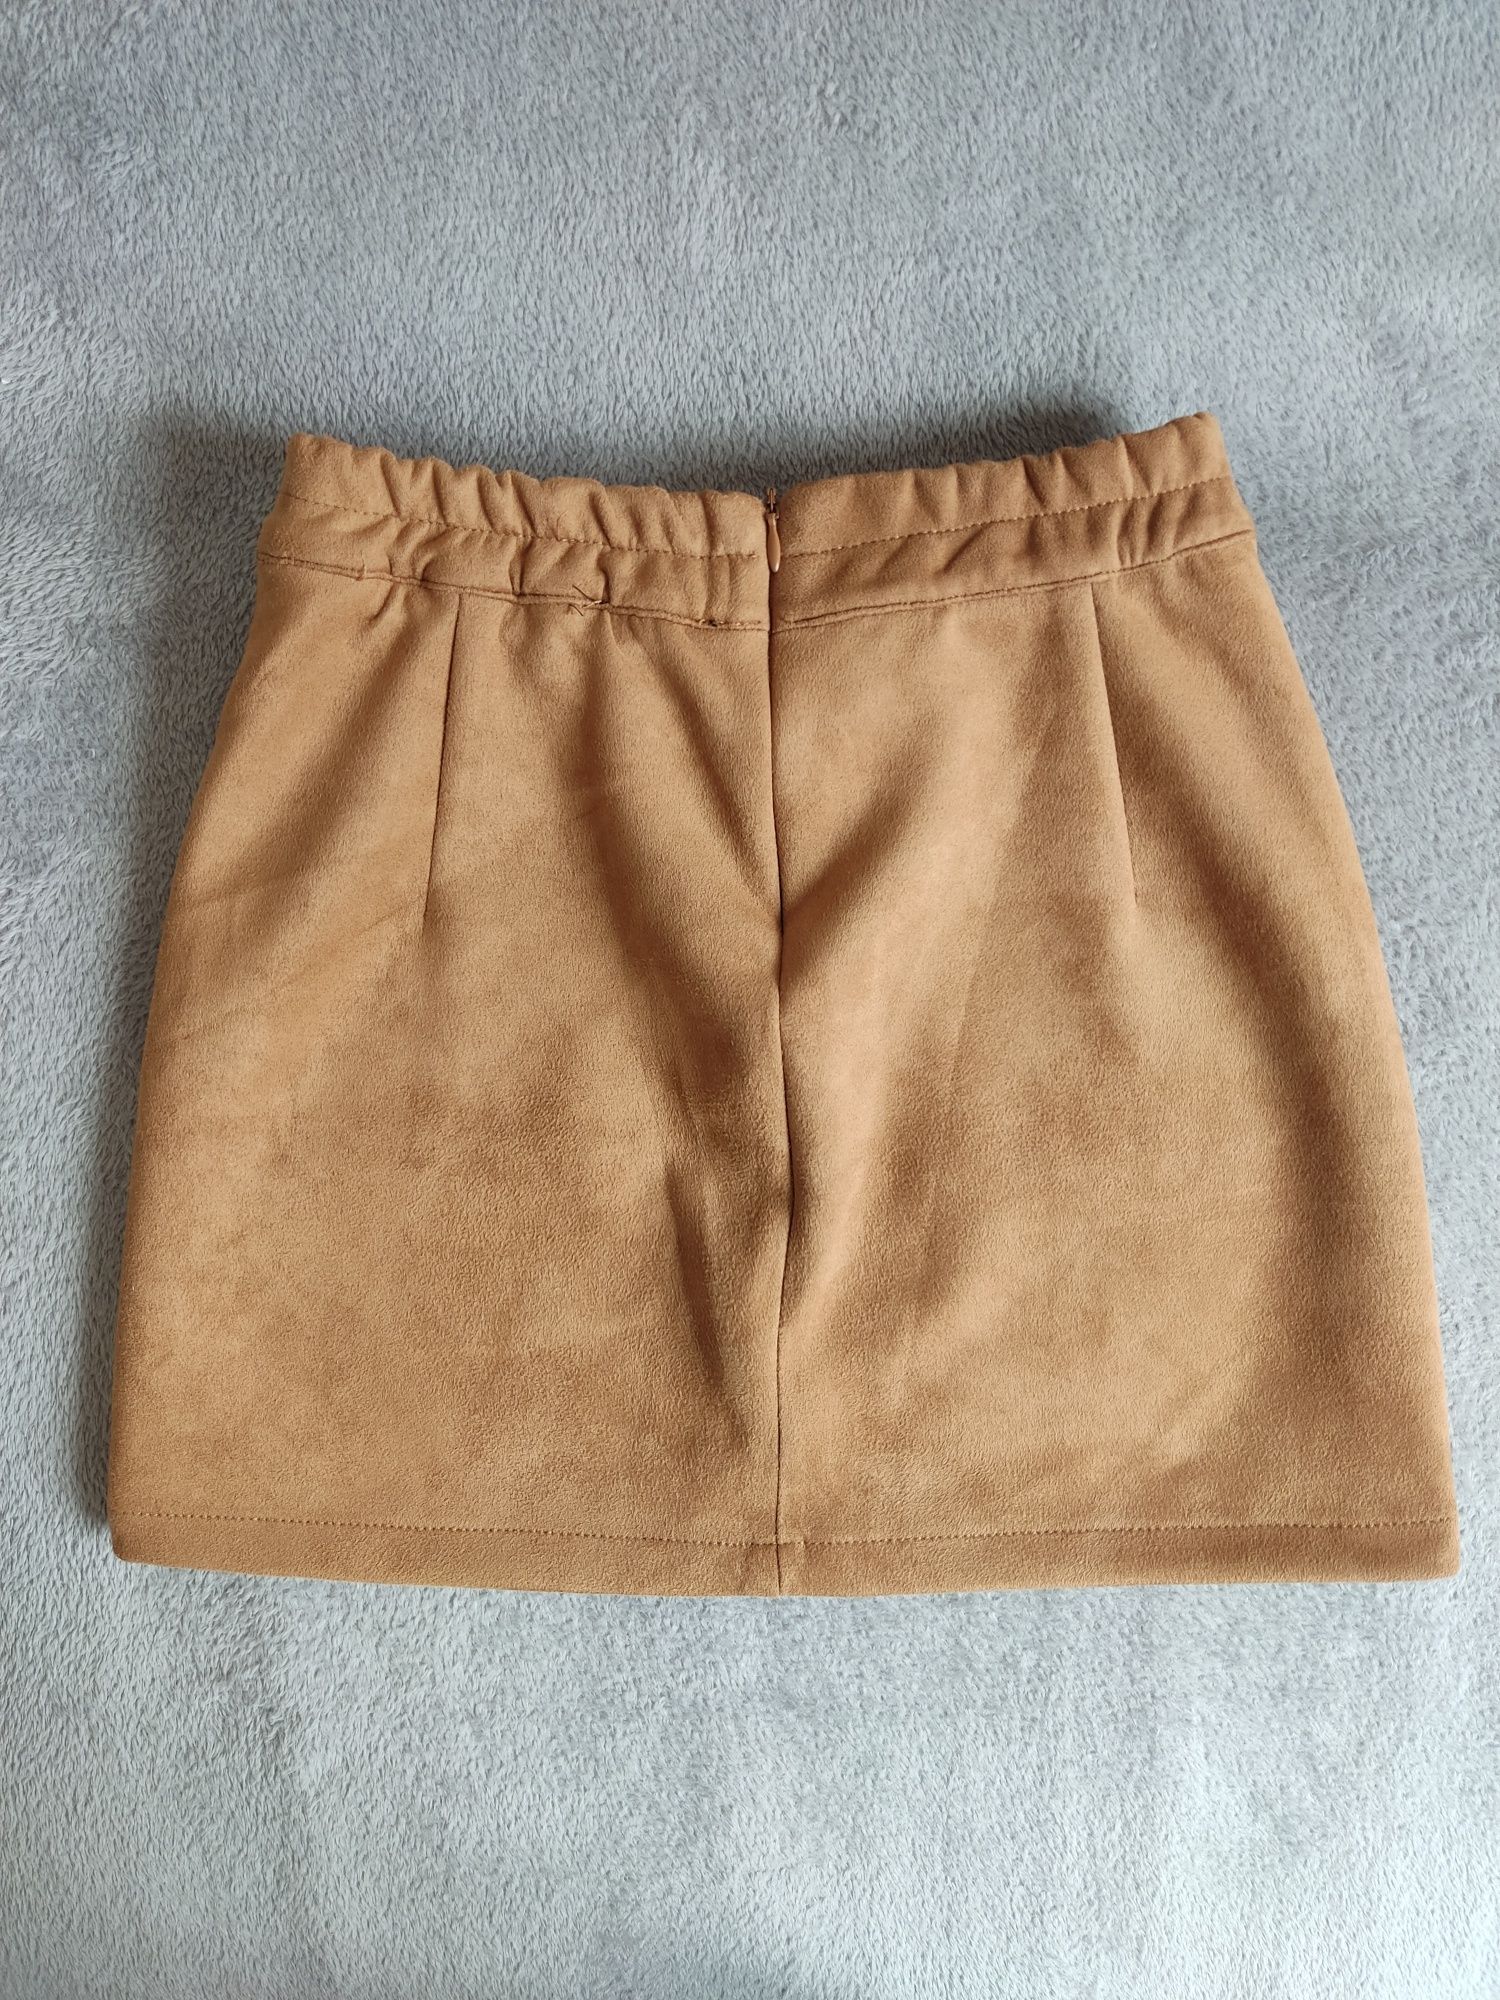 Zamszowa spódnica mini BERSHKA XS